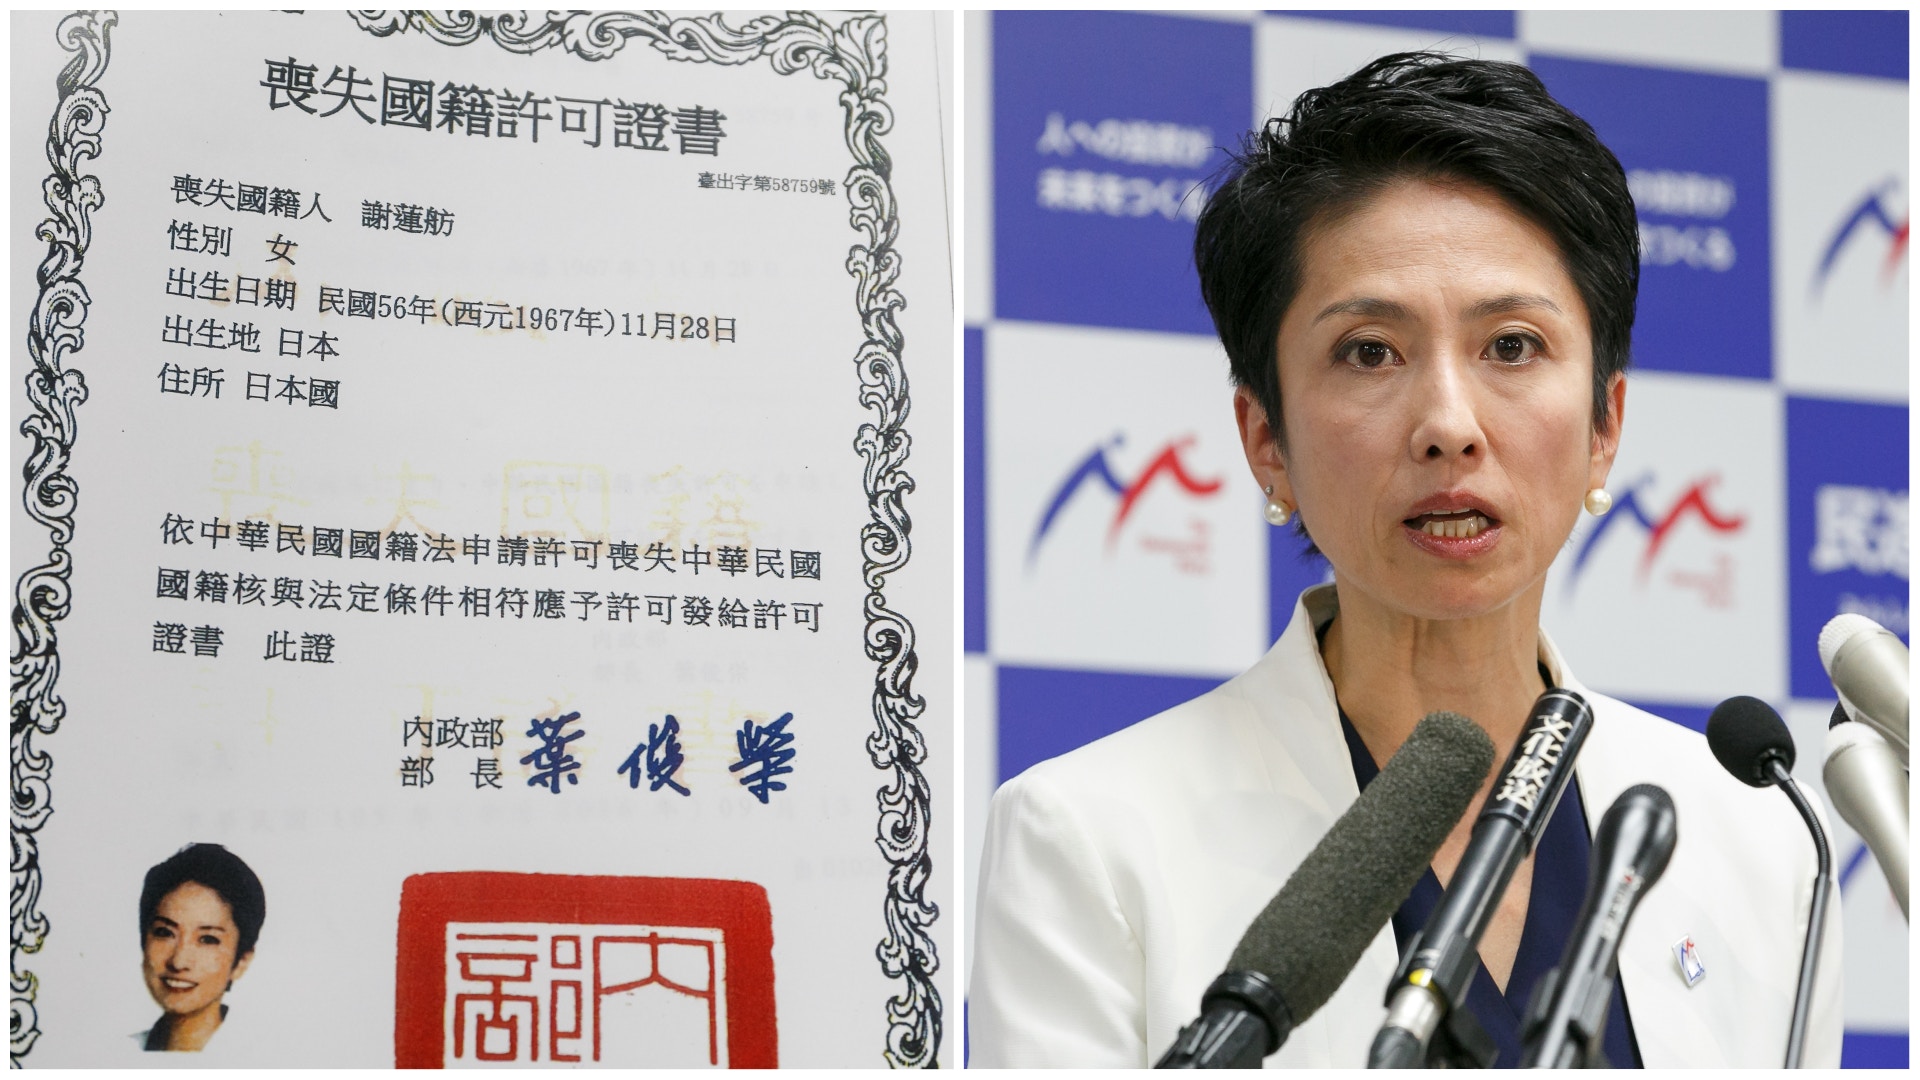 蓮舫公開戶籍證日本人身份惹議被指鼓吹歧視或助長極權主義 香港01 即時國際